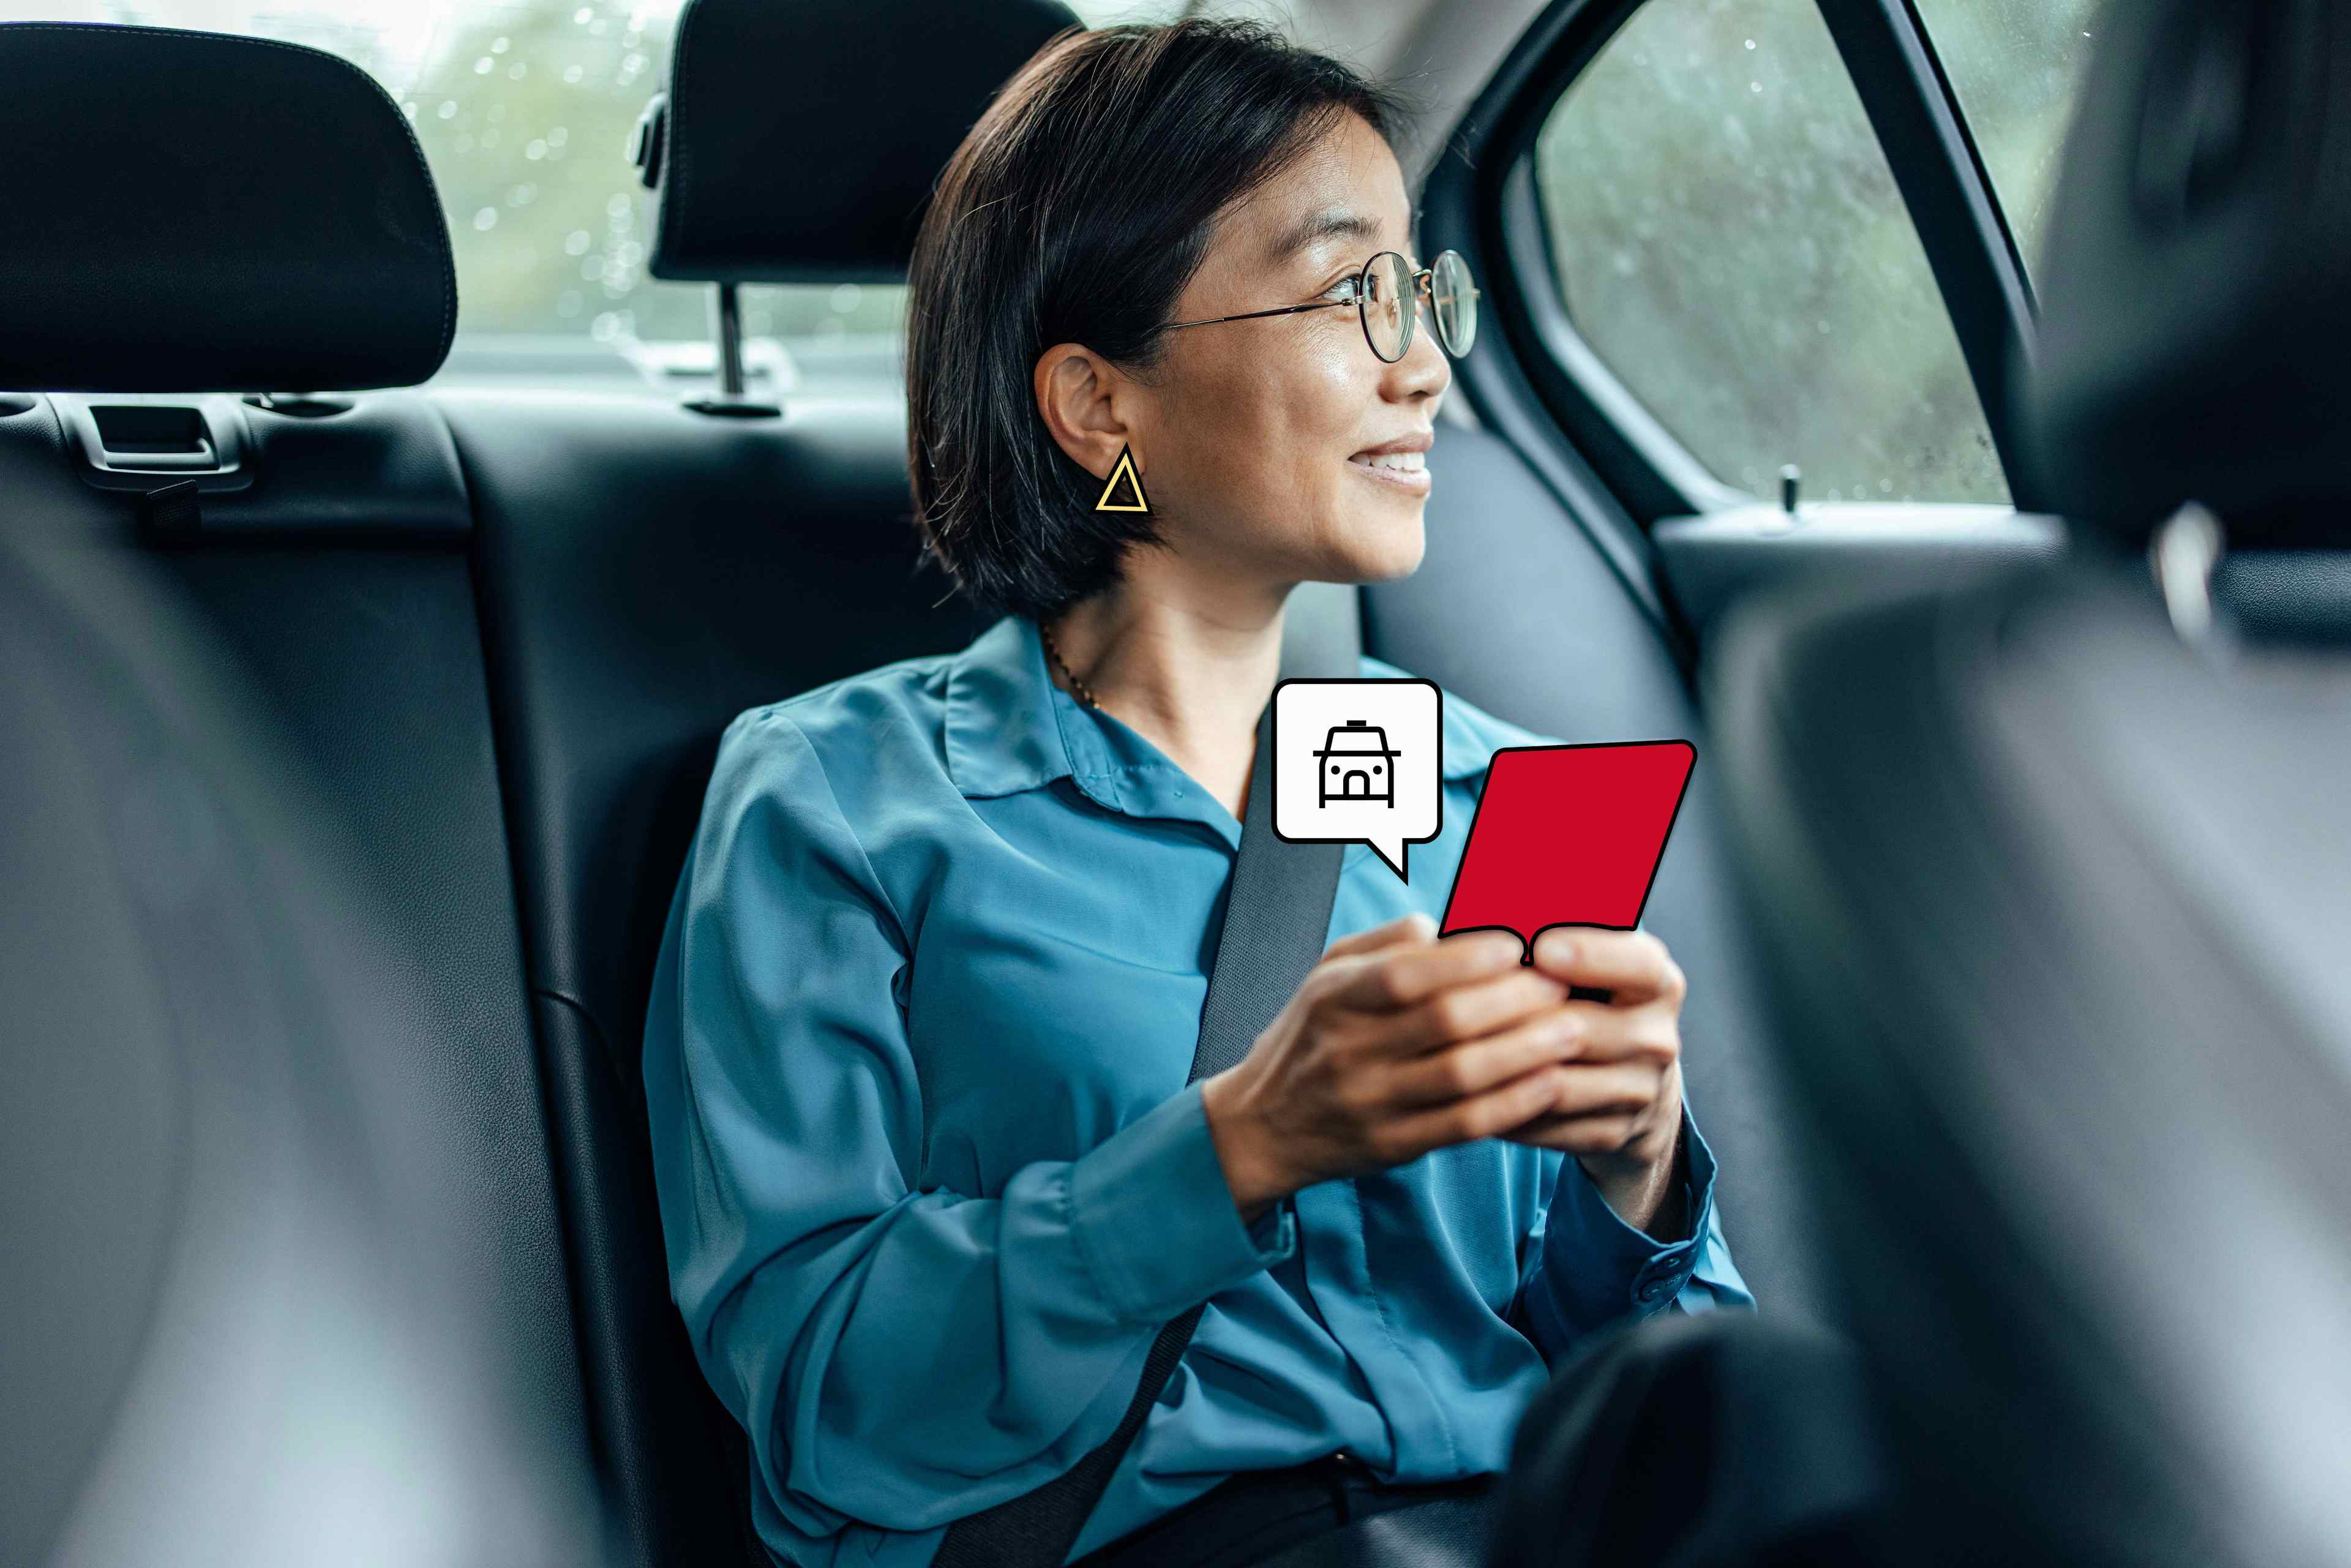 Podróżujący w interesach siedzi w taksówce w drodze do podróży służbowej, trzymając telefon komórkowy w aplikacji FREENOW